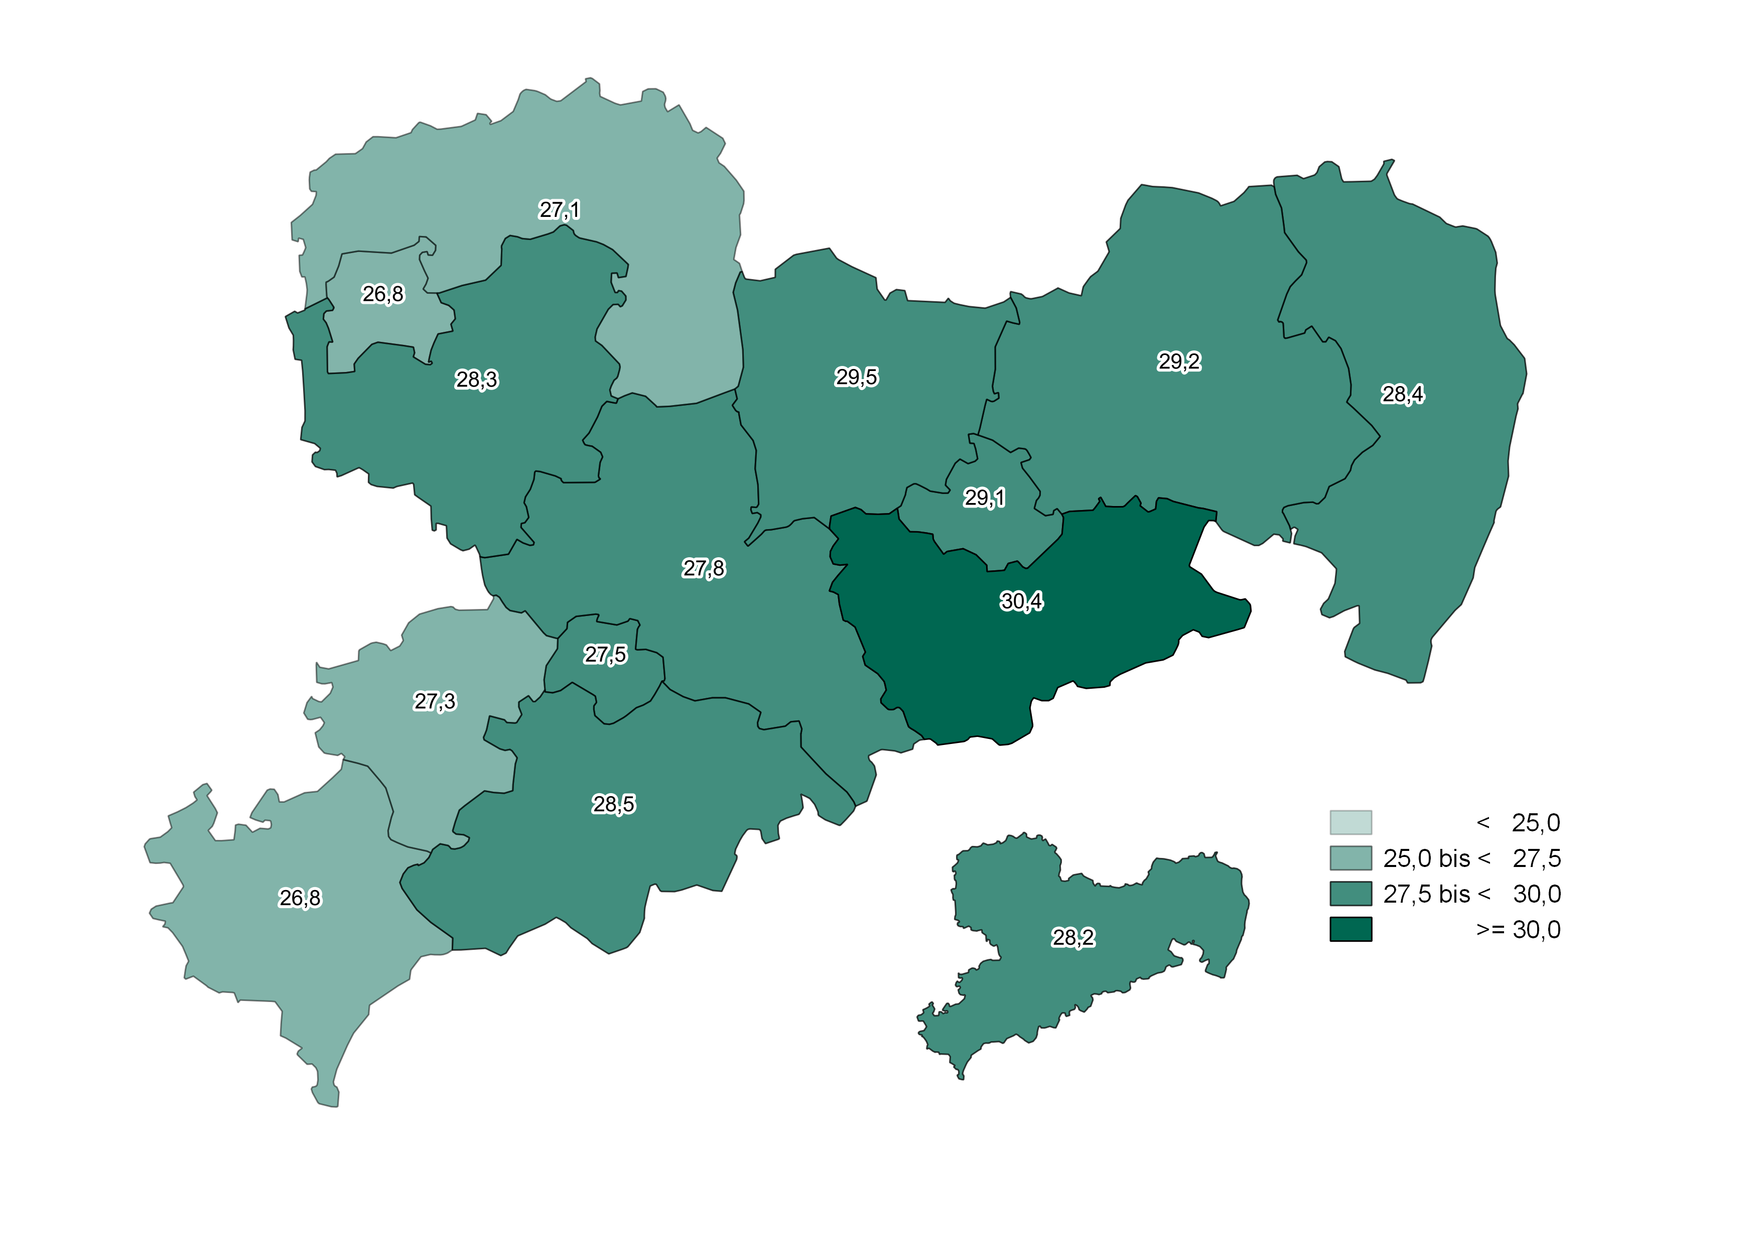 Die Werte des Jugendquotienten zeigen wenig Unterschiede in den Landkreisen und kreisfreien Städten und liegen zwischen 26,8 und 30,4.